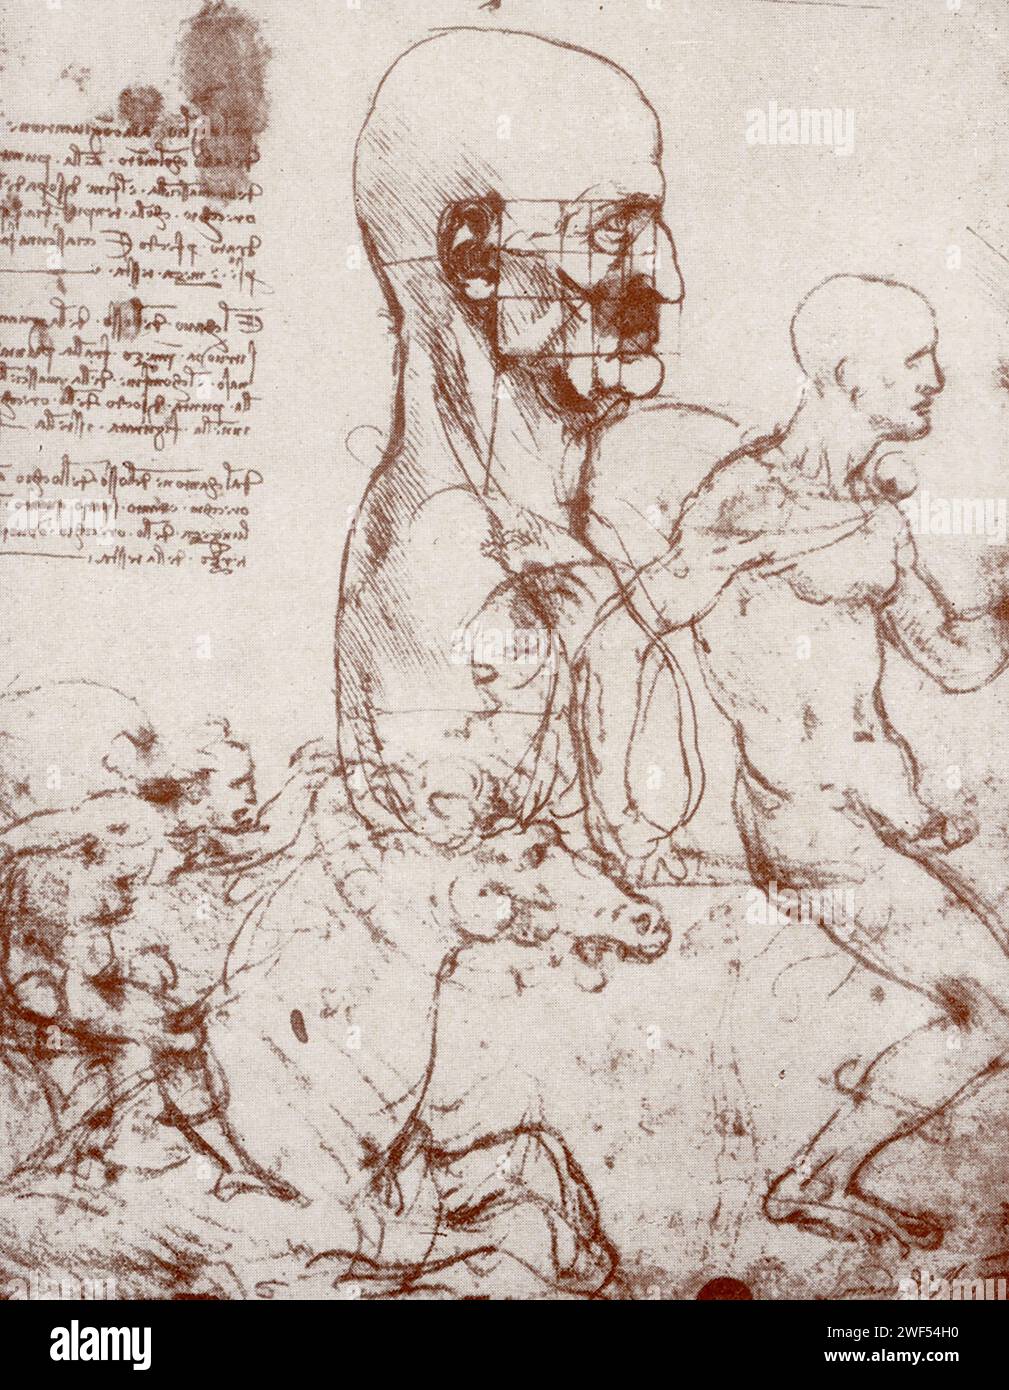 Qui sono mostrate le scheletriche realizzate da Leonardo da Vinci. Leonardo di ser Piero da Vinci (1452-1519) è stato un polimero italiano dell'alto Rinascimento attivo come pittore, disegnatore, ingegnere, scienziato, teorico, scultore e architetto. Foto Stock